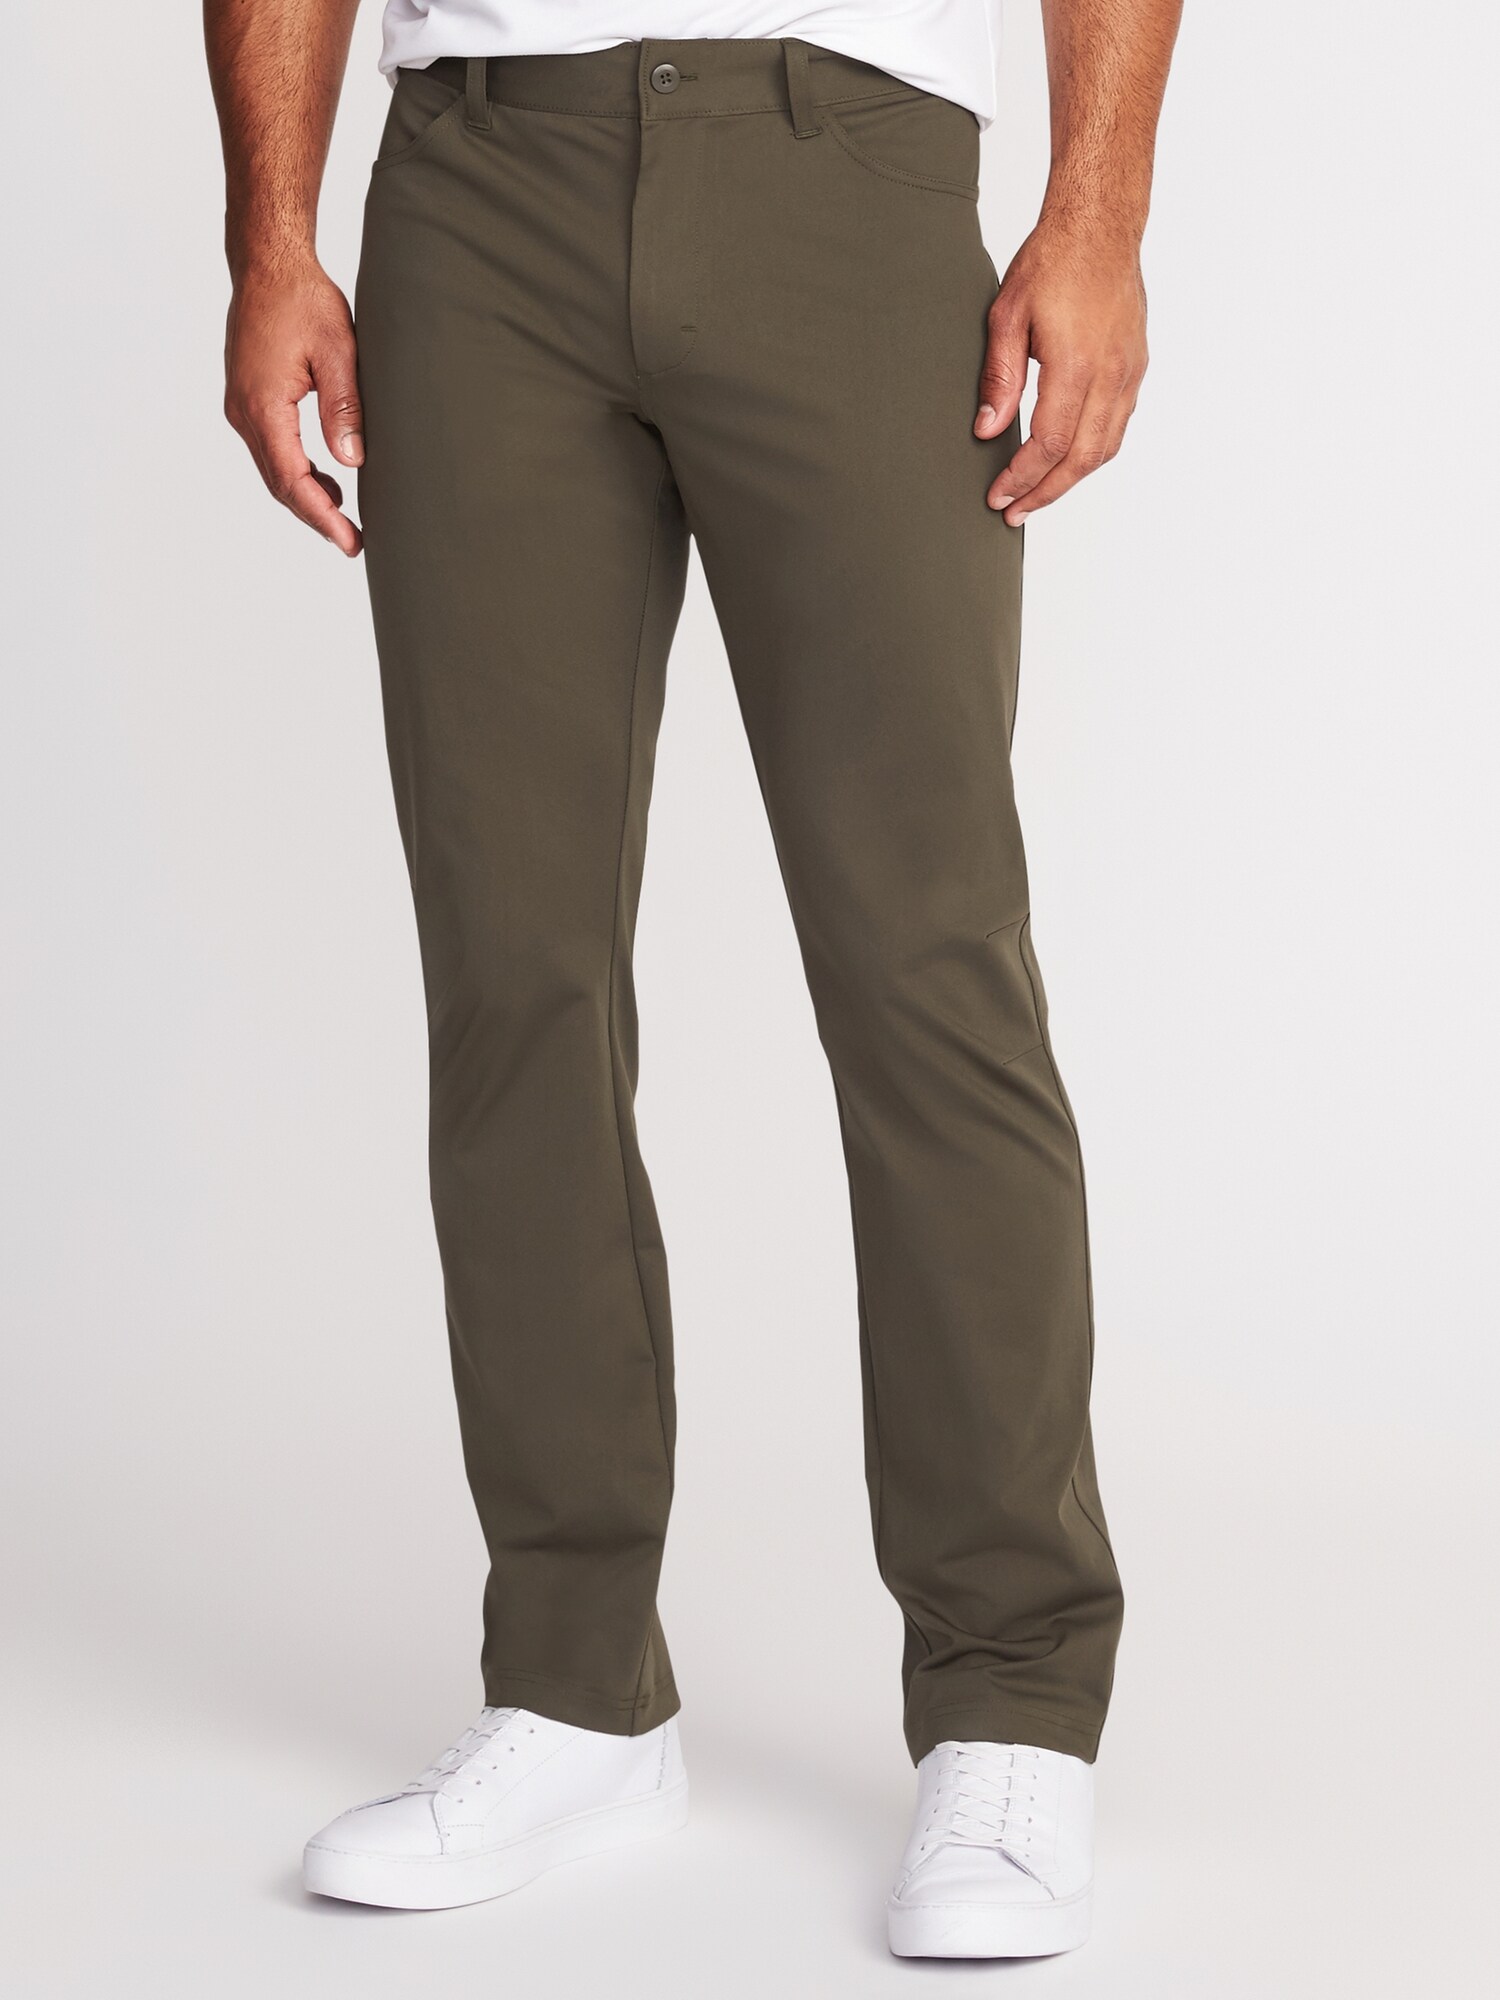 Slim Go-Dry Built-In Flex Performance Pants for Men